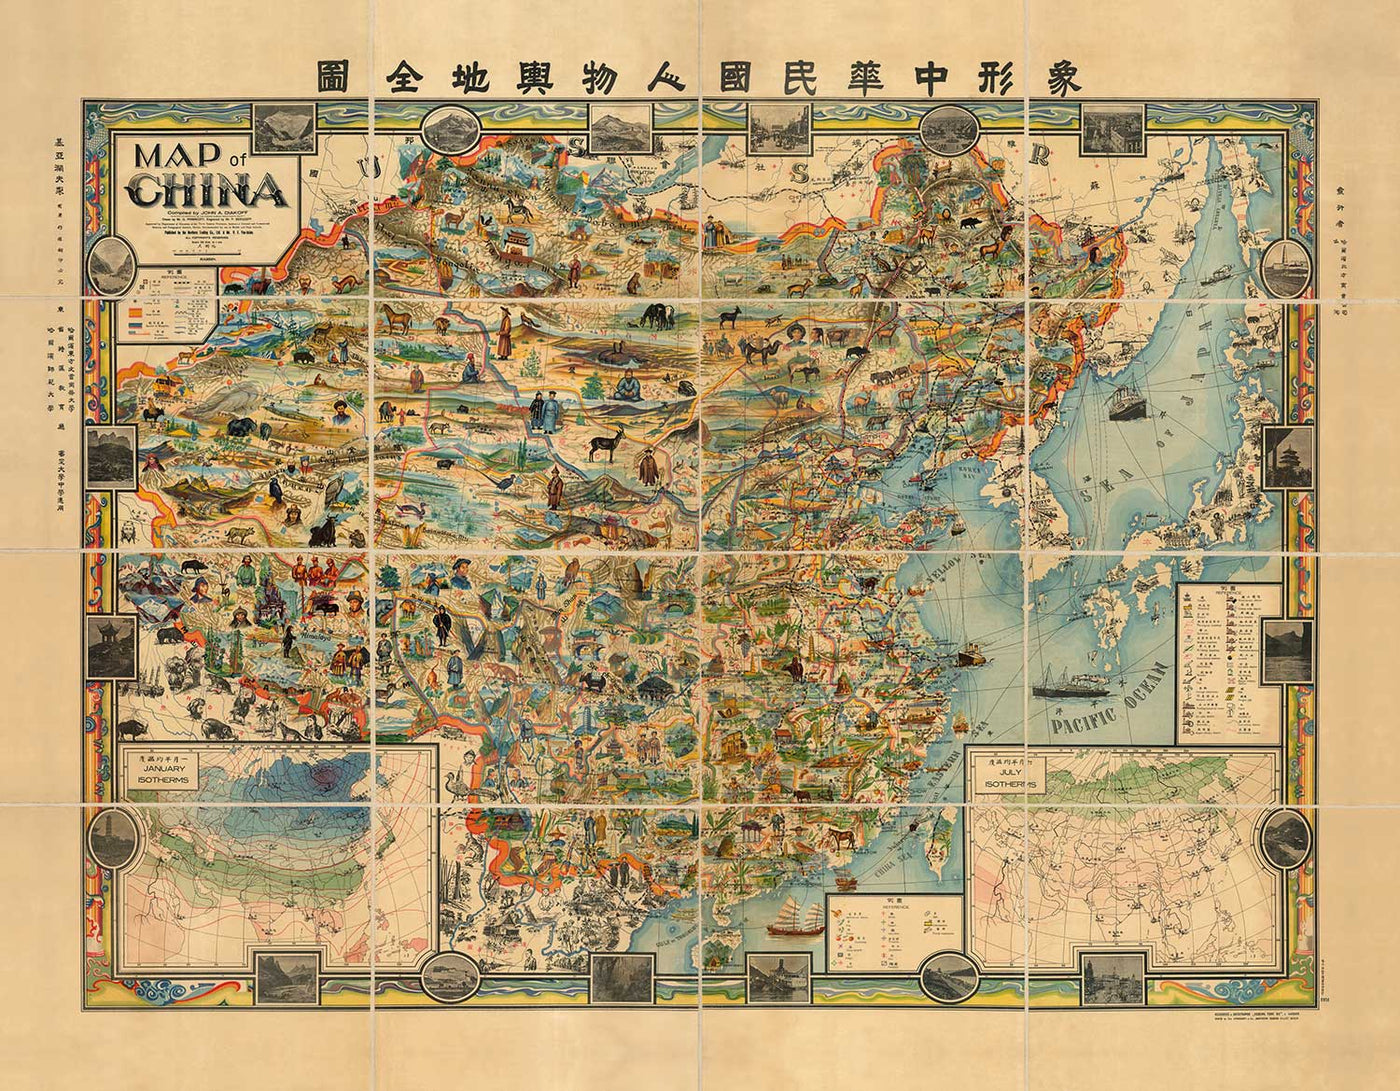 Seltene alte Bildkarte von China im Jahr 1931 von G. Primakoff - Taiwan, Hainan, Hongkong, Hanoi, Liaoning